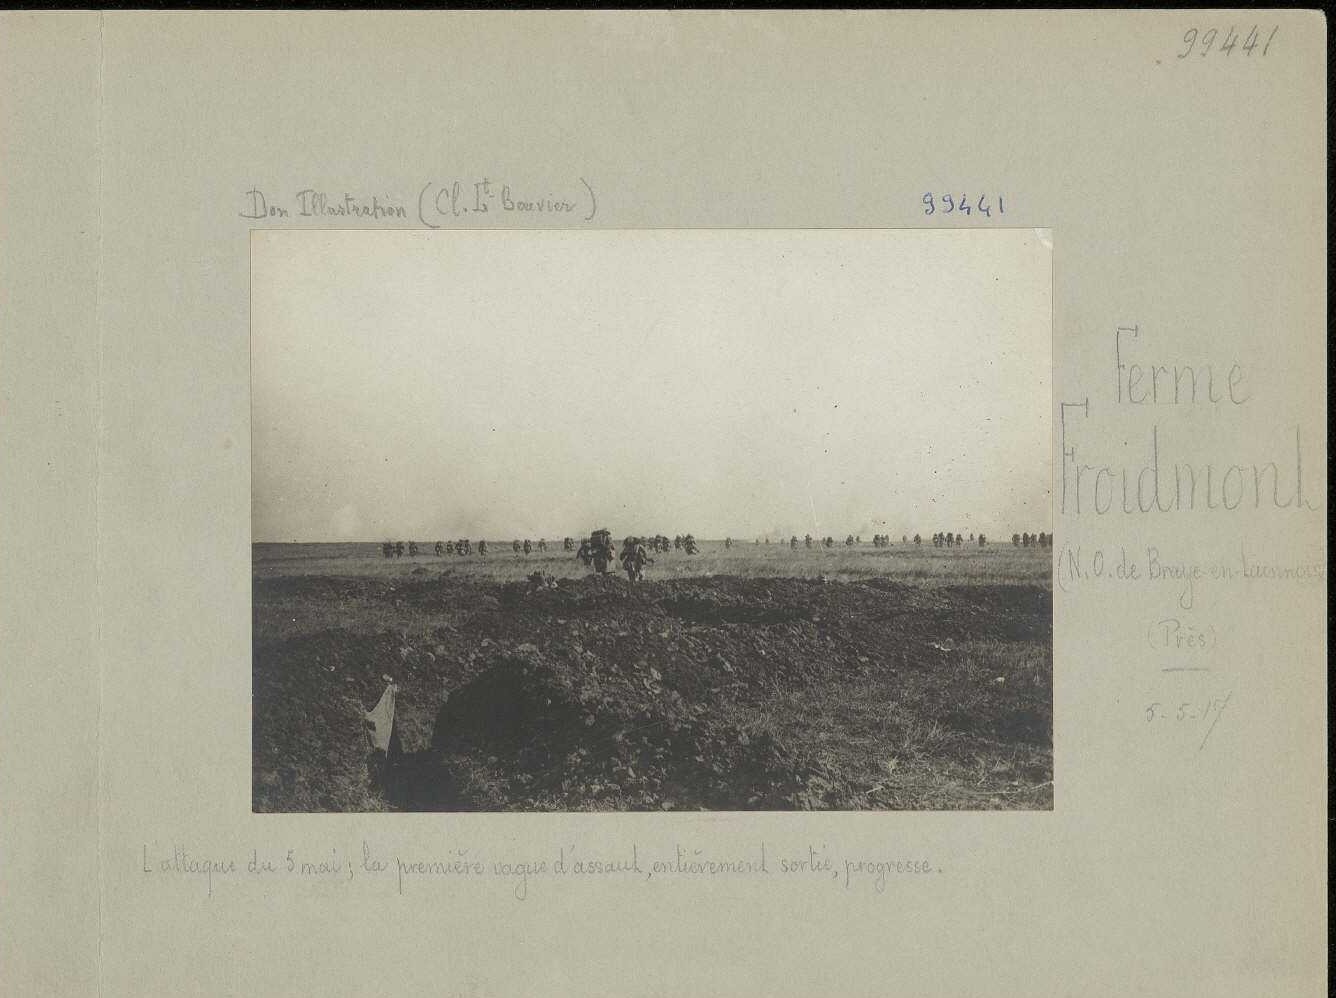 Ferme Froidmont - nord ouest de Braye en Laonnois - attaque du 5 mai 1917